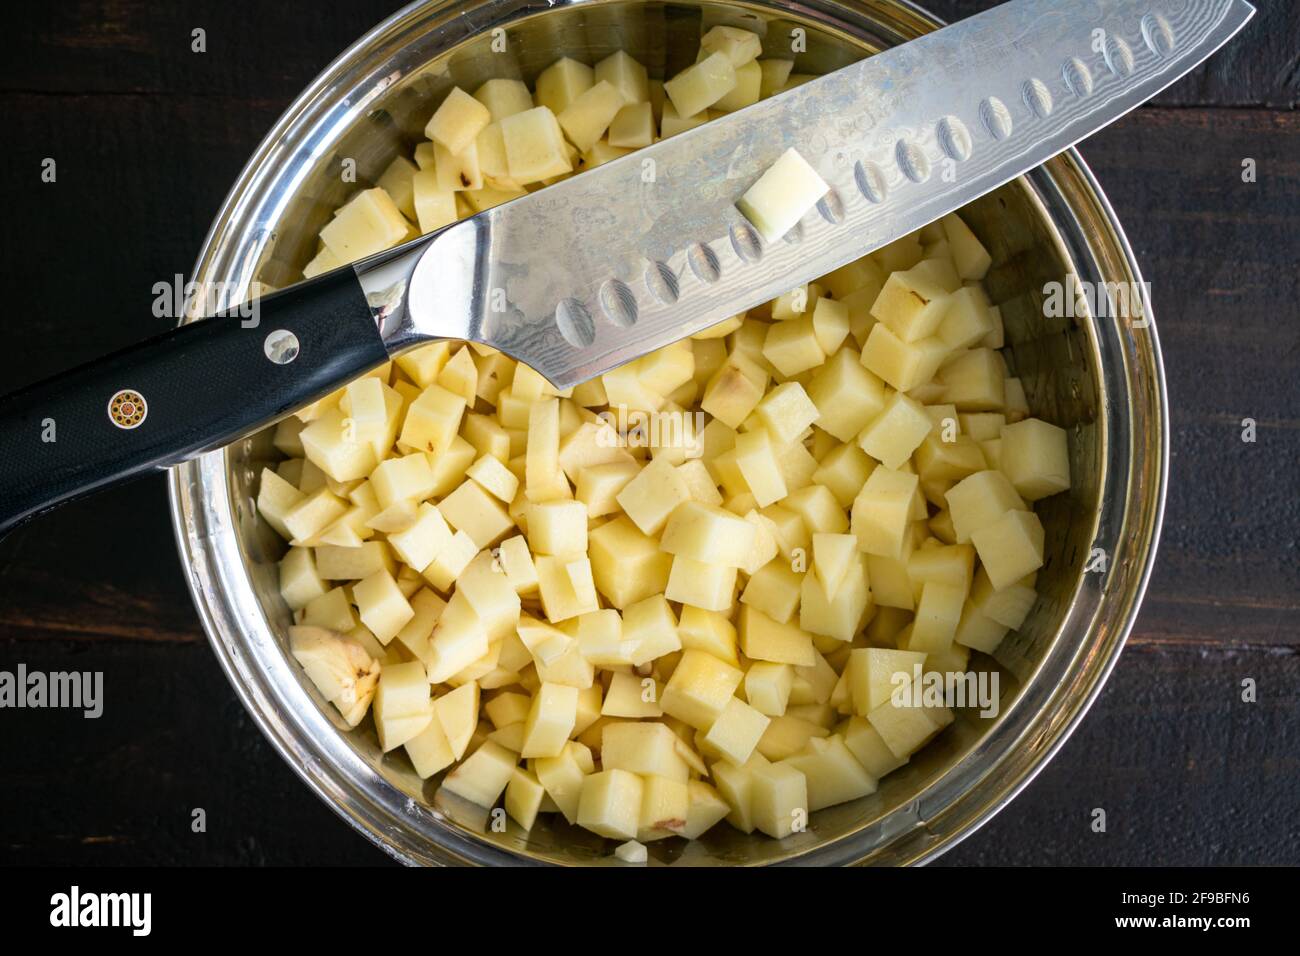 Pommes de terre Russet coupées en dés et couteau du Chef : un bol de mélange rempli de pommes de terre russet orthographiées et coupées en dés avec un couteau santoku Banque D'Images